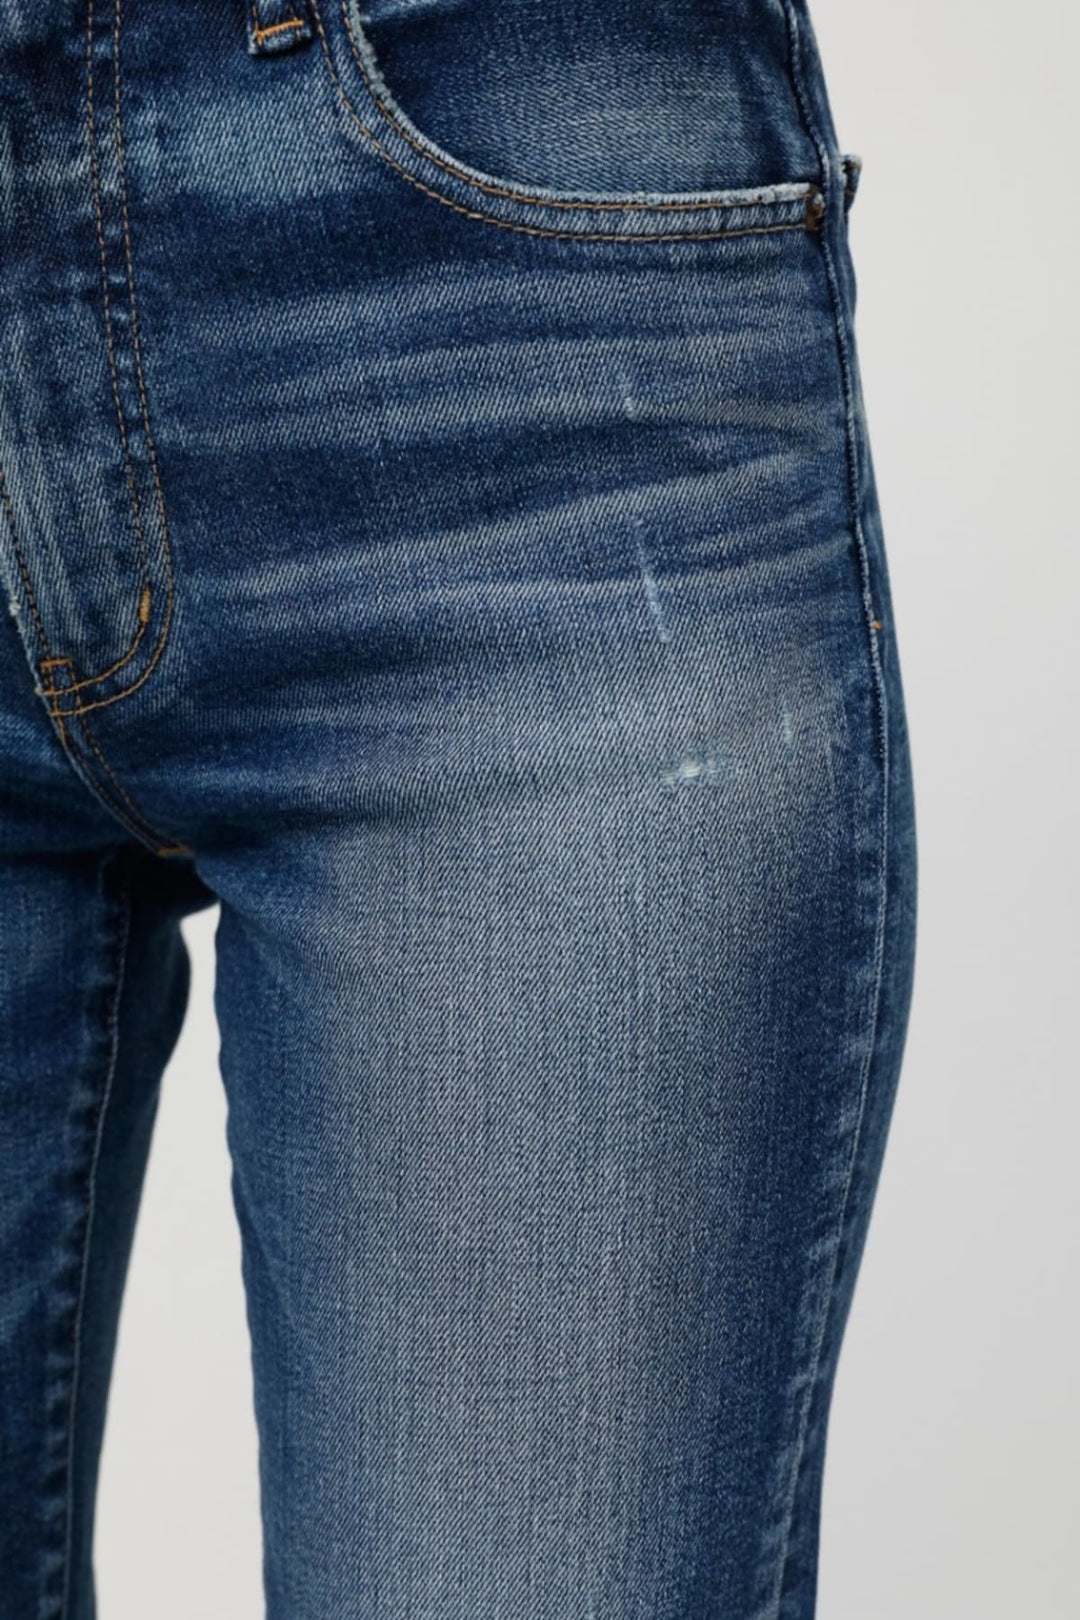 Moussy Denim - MV Tamworth Skinny Jeans in D/BLU113